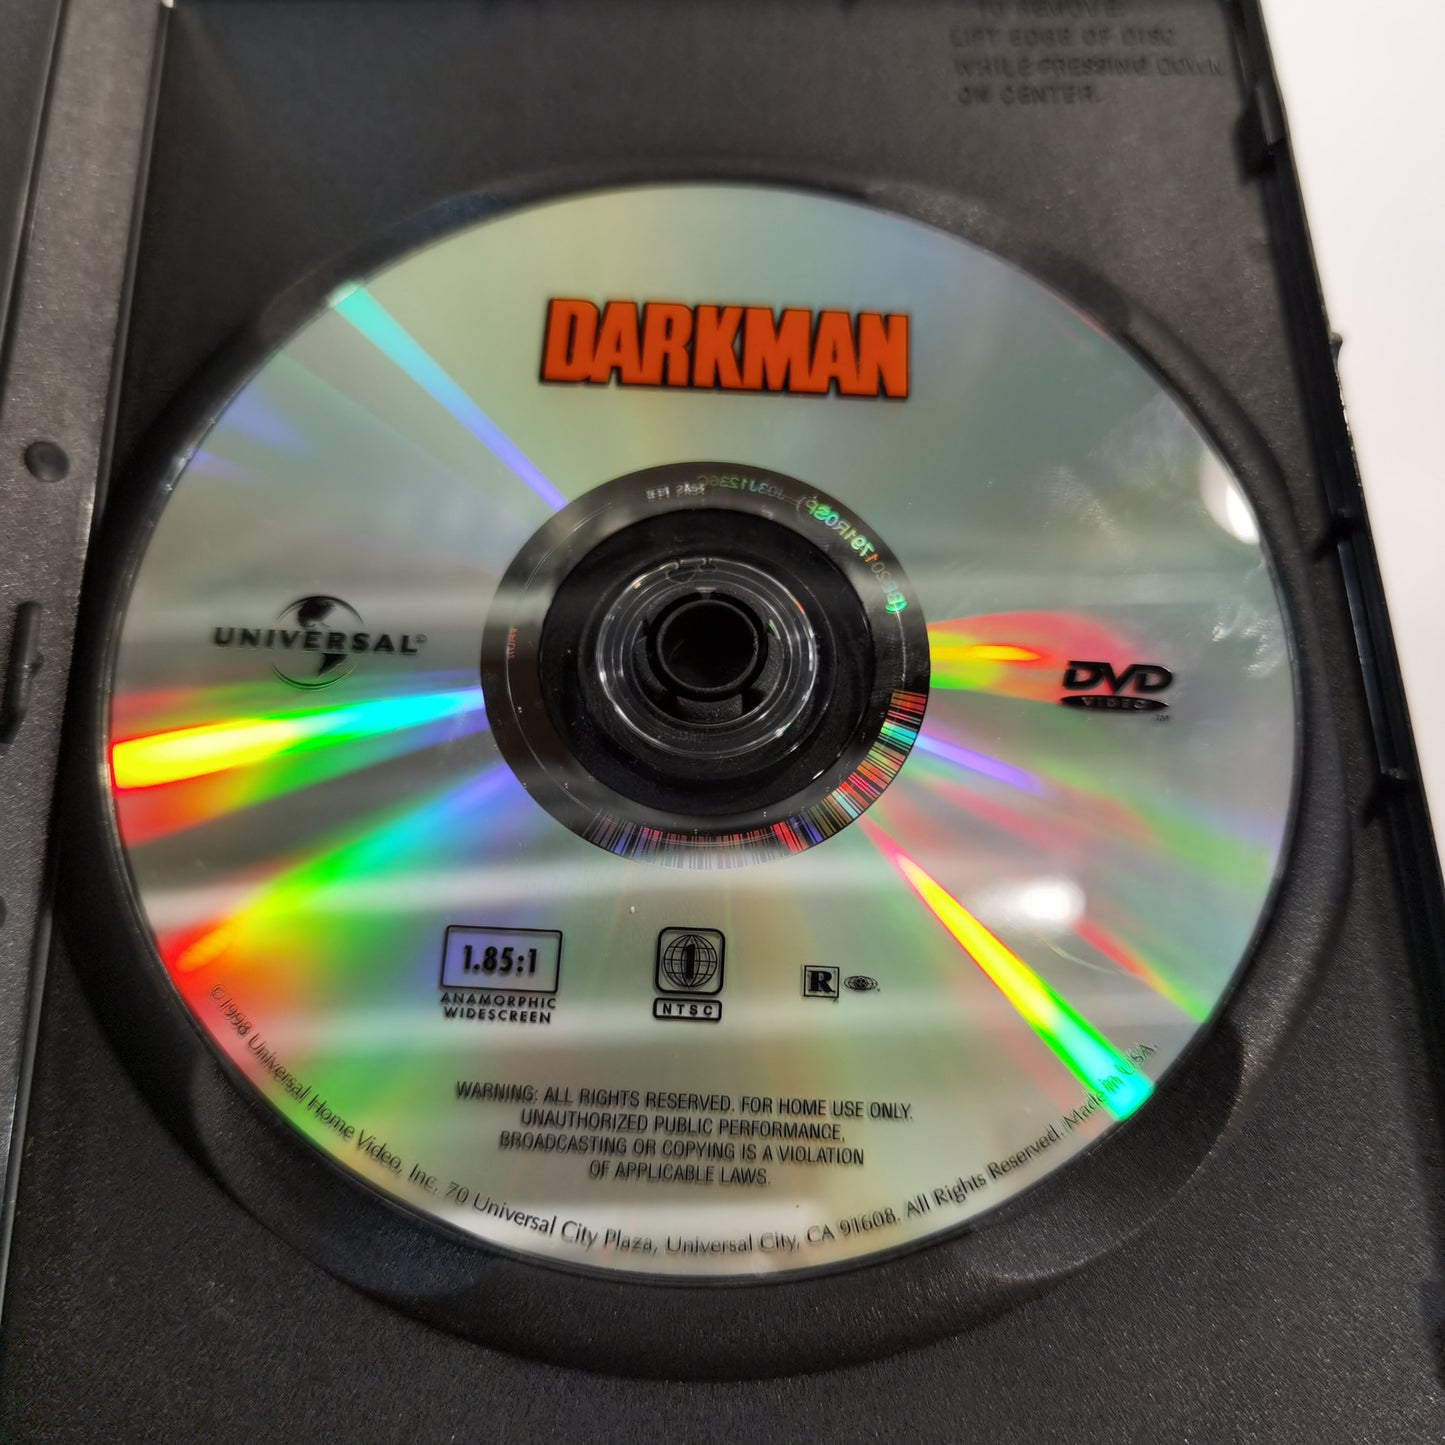 Darkman (1990) - DVD US 1998